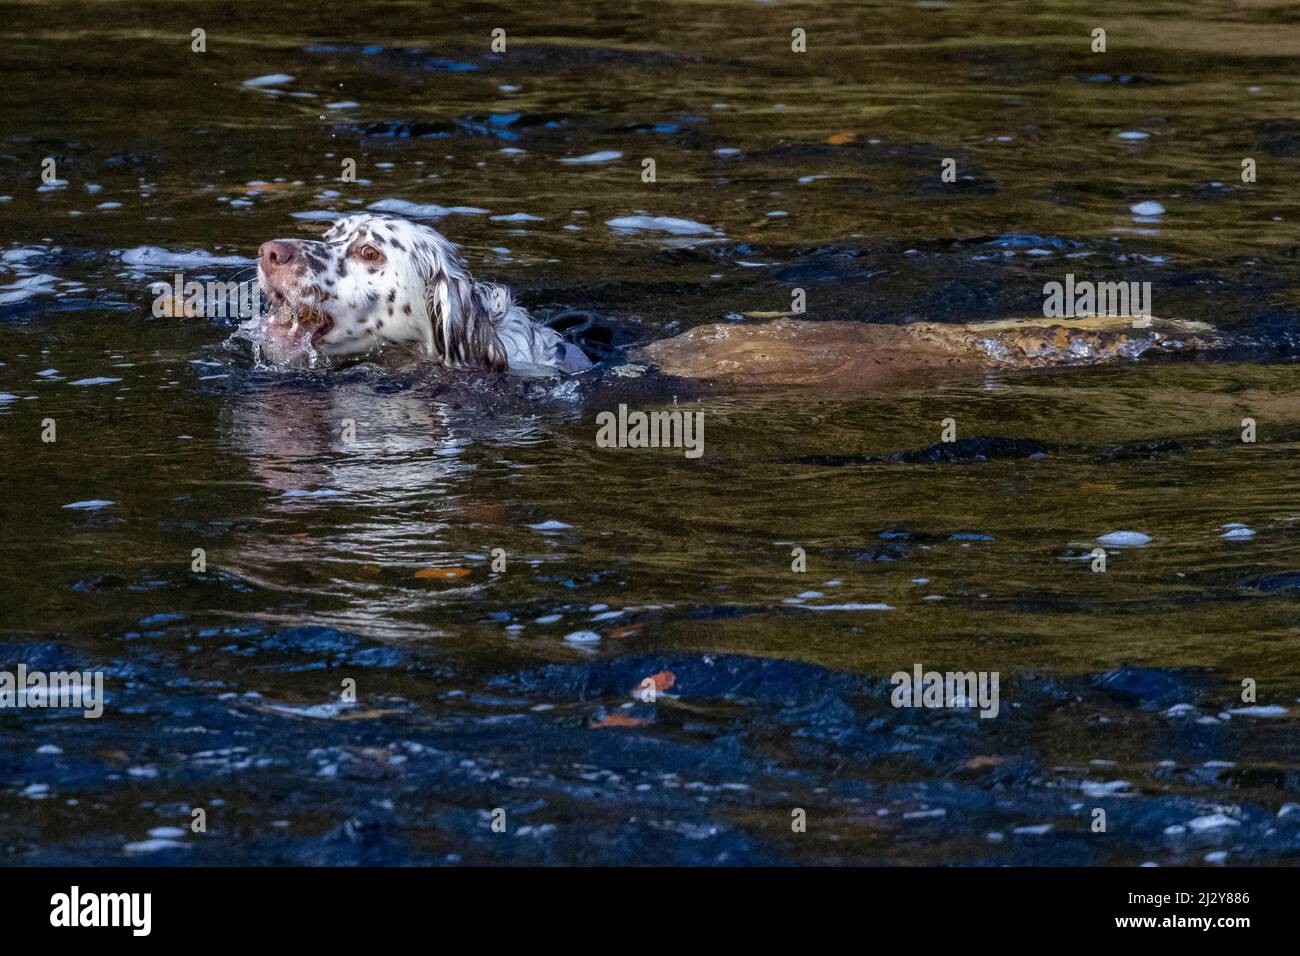 Il cane che nuota in un fiume che recupera una palla con l'acqua che va in bocca mentre recupera la palla. REGNO UNITO Foto Stock